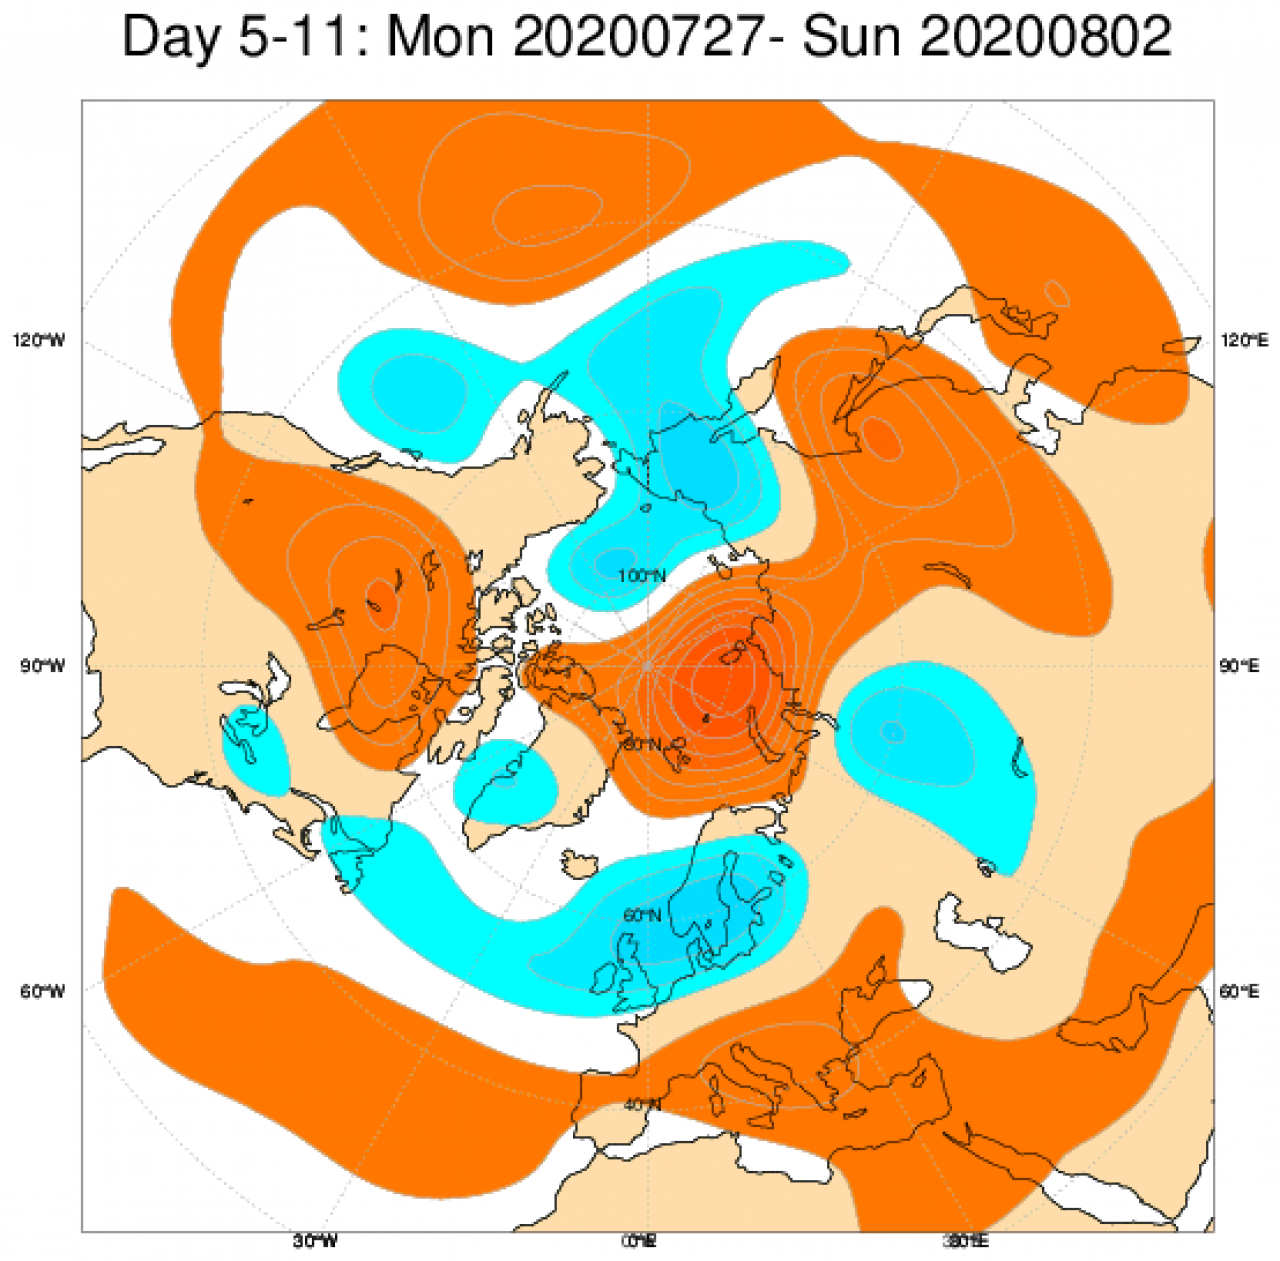 Le anomalie di geopotenziale a 500hPa da modello ECMWF mediate sul periodo 27 luglio-2 agosto